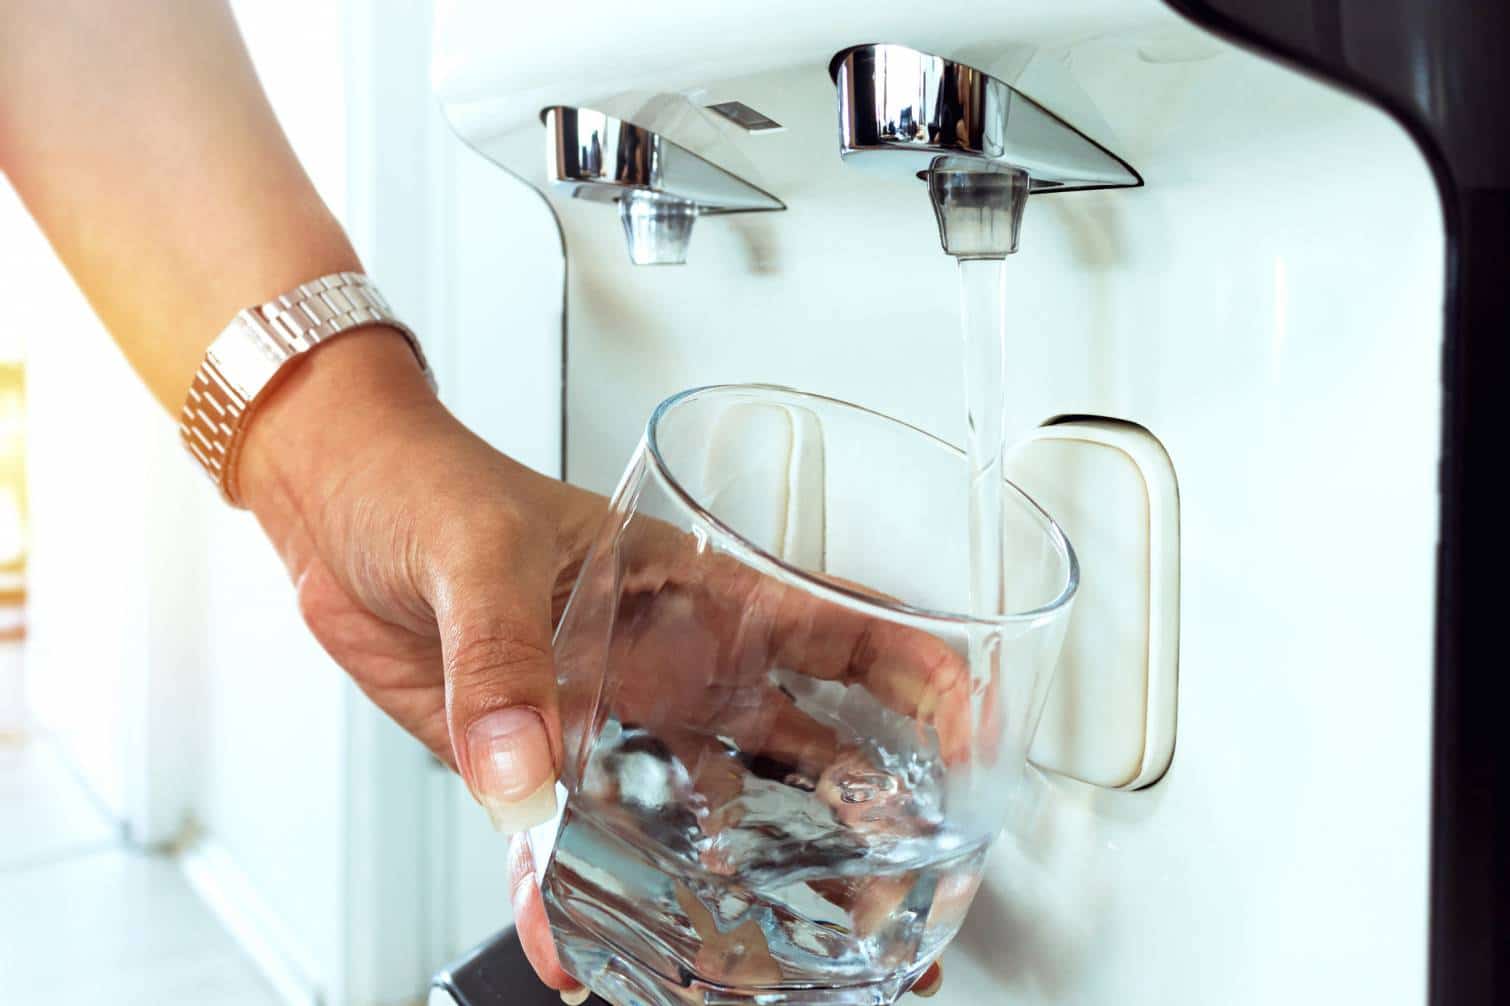 entreprise traitement eau pure propre qualité spécialiste purifier filtration analyse